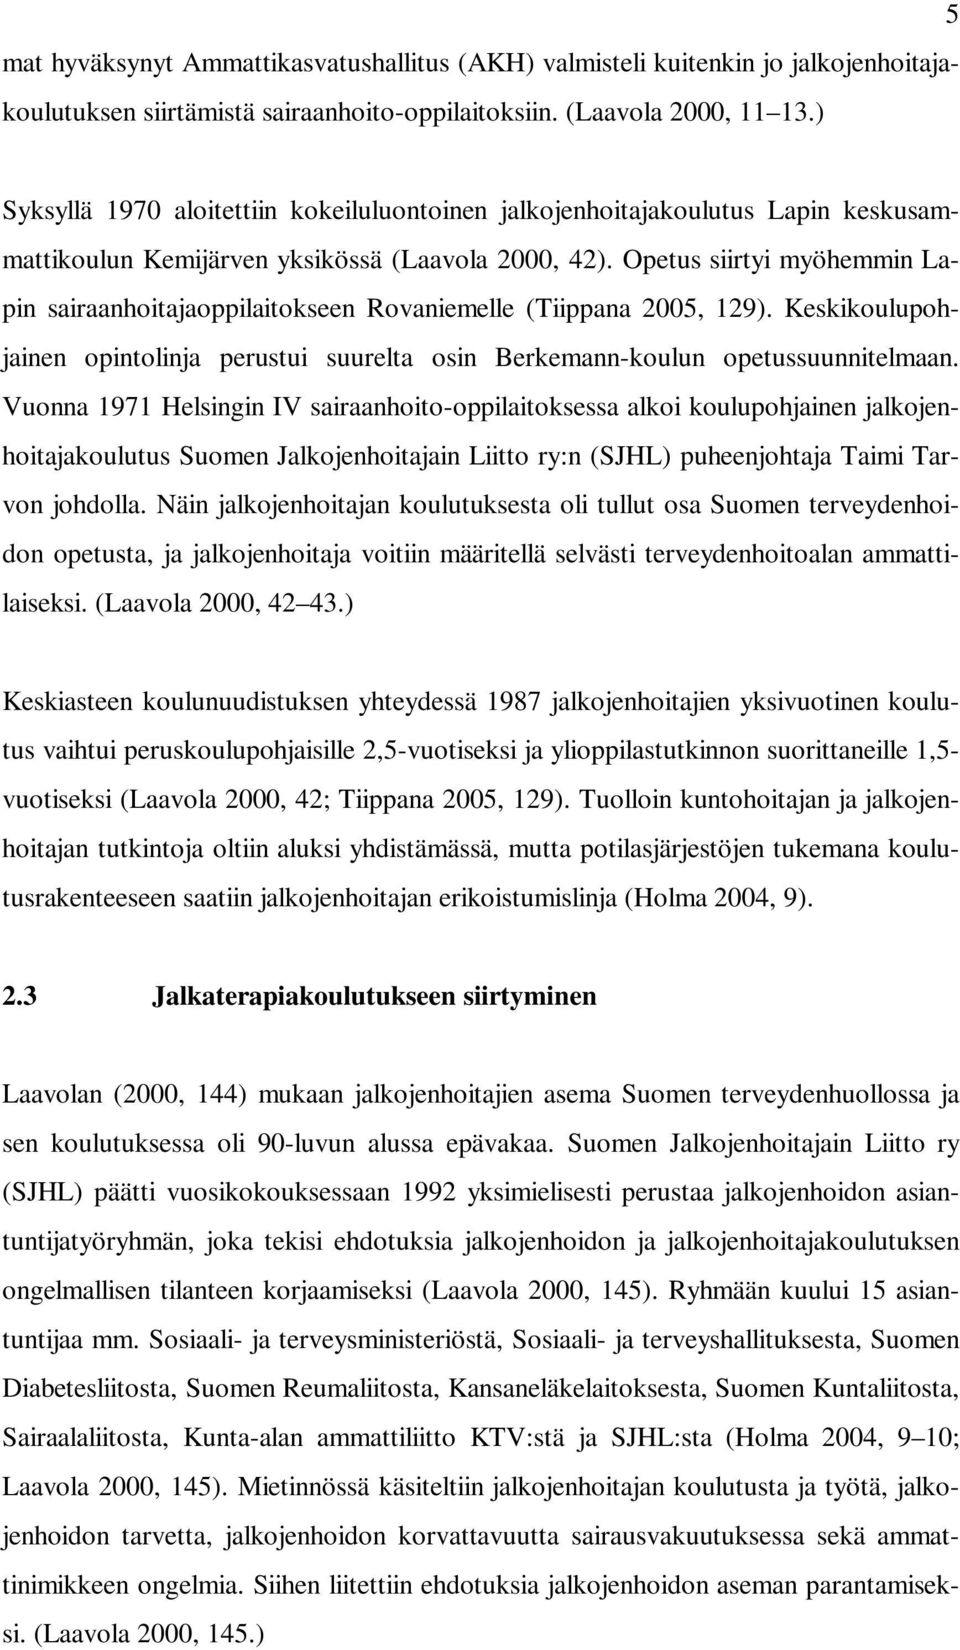 Opetus siirtyi myöhemmin Lapin sairaanhoitajaoppilaitokseen Rovaniemelle (Tiippana 2005, 129). Keskikoulupohjainen opintolinja perustui suurelta osin Berkemann-koulun opetussuunnitelmaan.